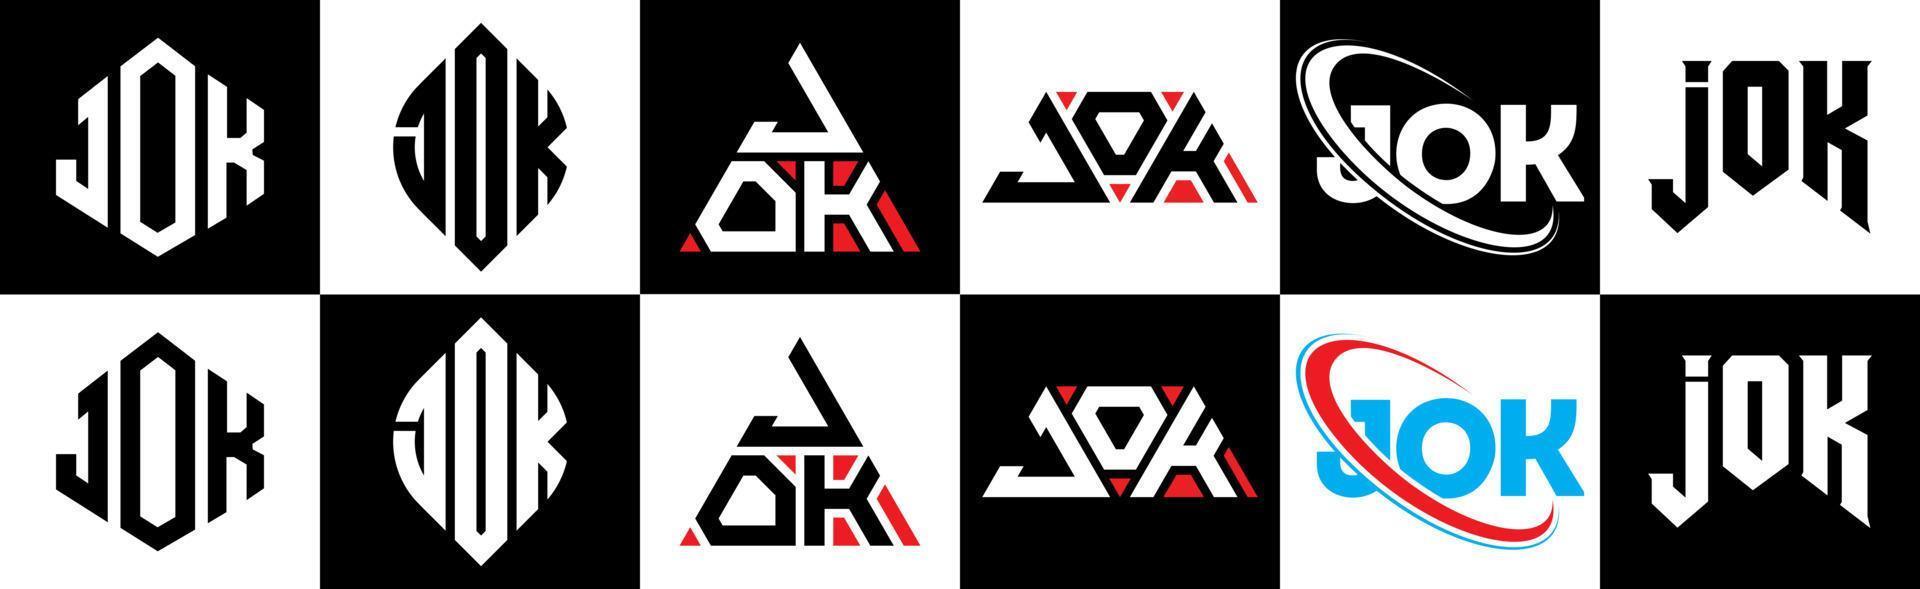 Jok-Buchstaben-Logo-Design in sechs Stilen. Jok-Polygon, Kreis, Dreieck, Sechseck, flacher und einfacher Stil mit schwarz-weißem Buchstabenlogo in einer Zeichenfläche. Jok minimalistisches und klassisches Logo vektor